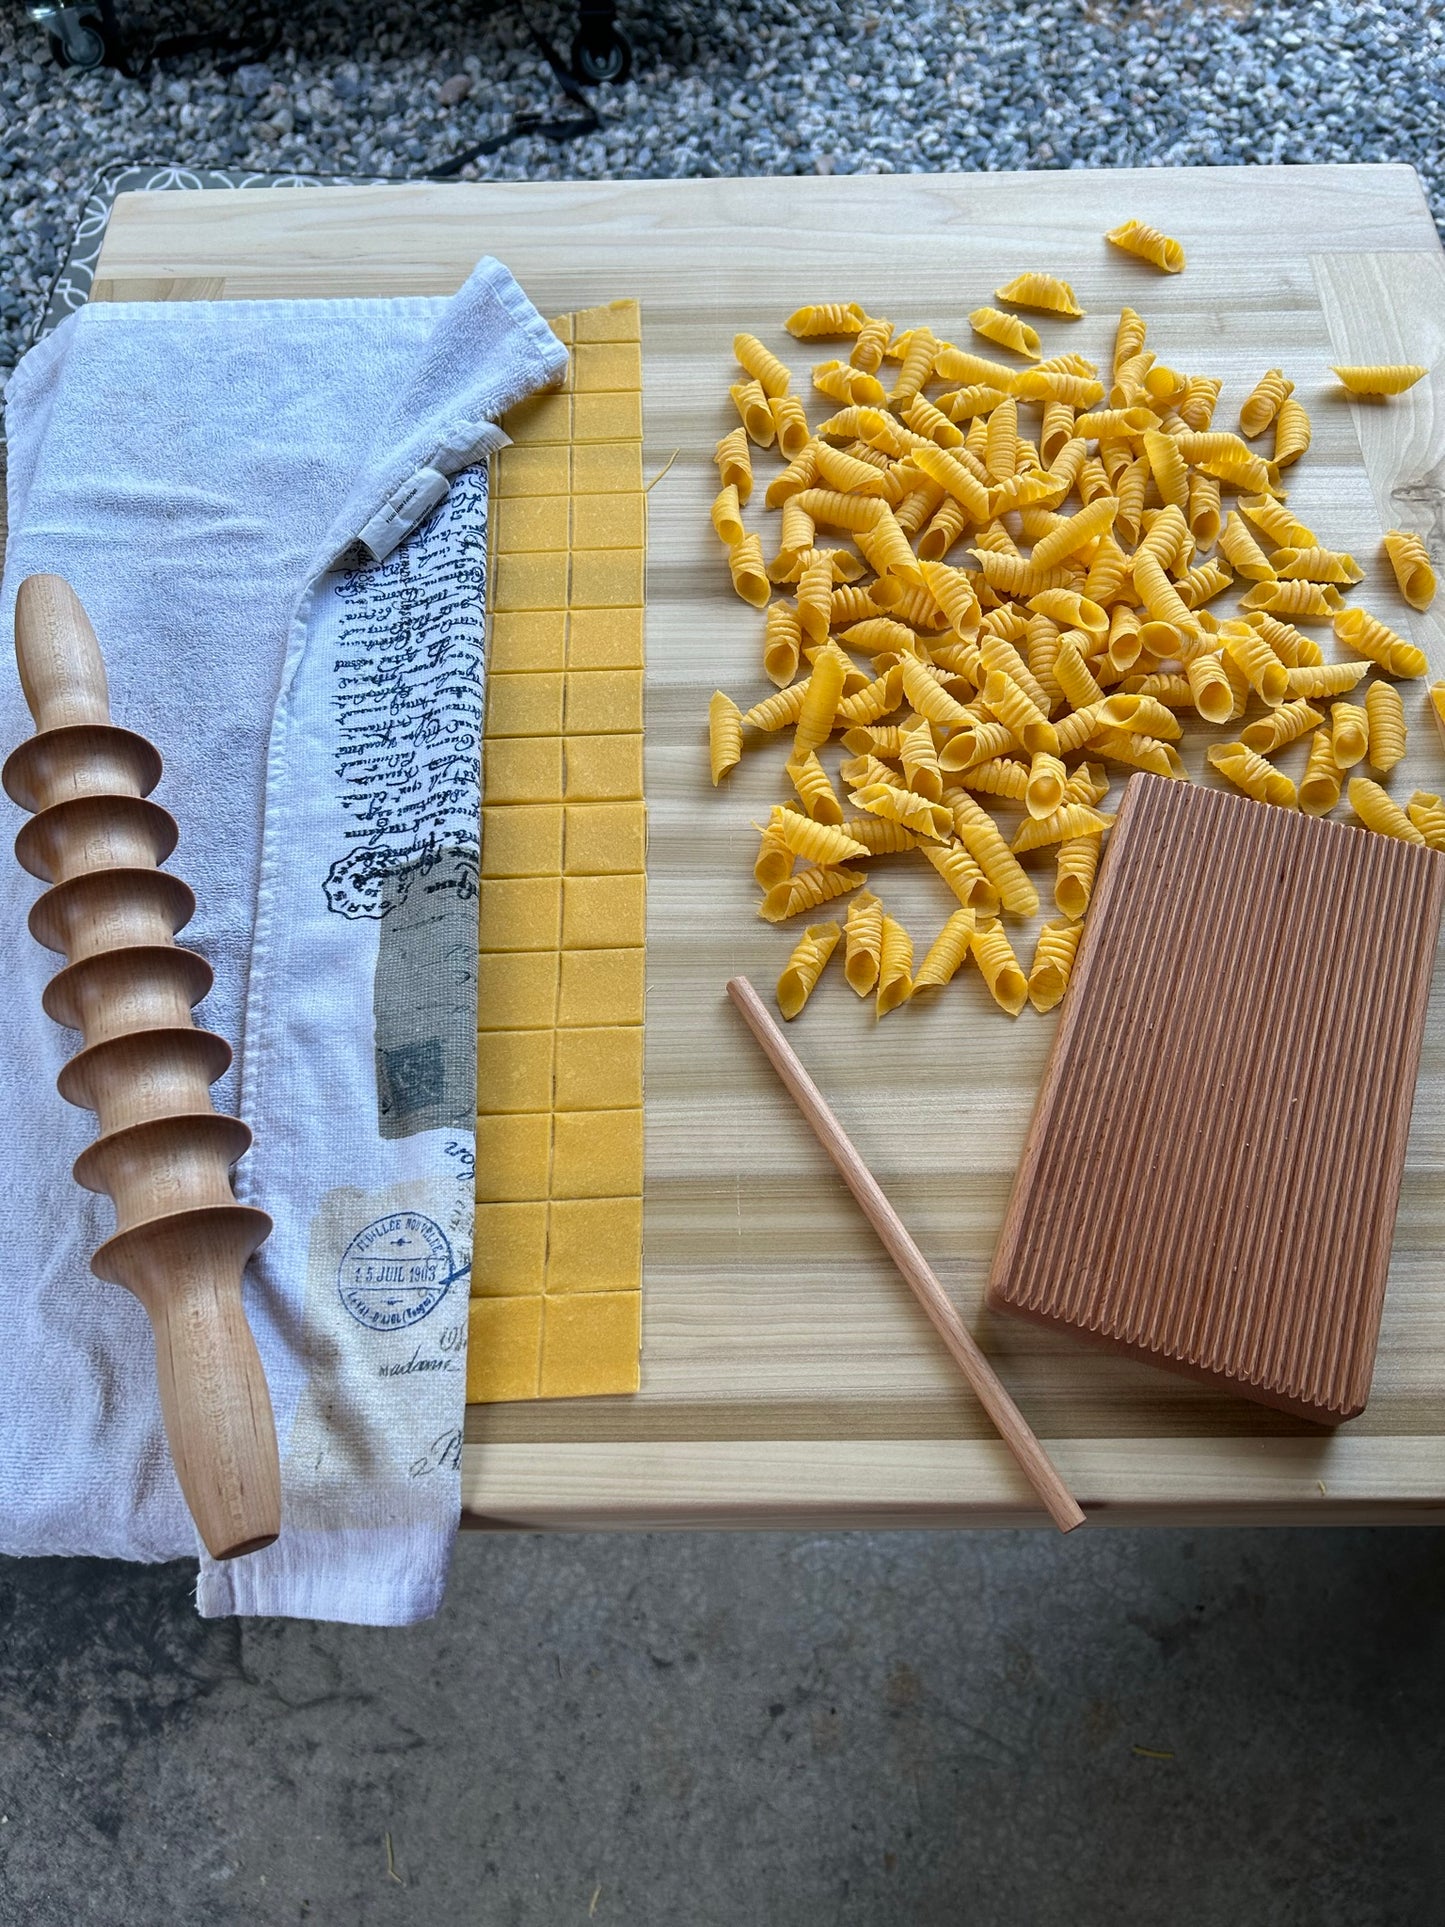 Pasta cutting pins, Balanzoni & Tortellini, Mateo Kitchen